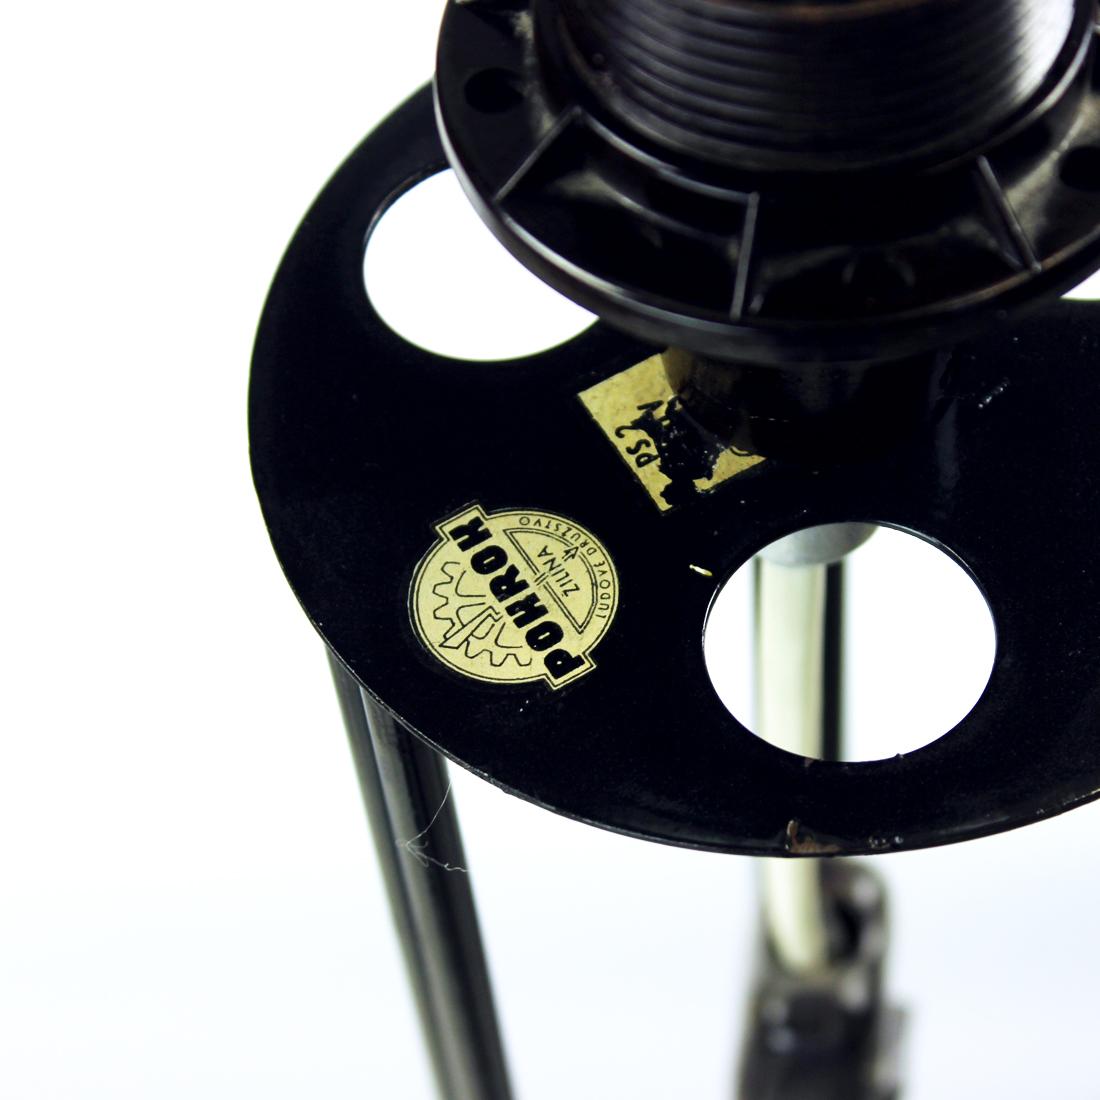 Elegant lampadaire sur pied produit par la société Pokrok en Tchécoslovaquie dans les années 1960. L'étiquette d'origine est encore attachée. Pokrok était l'une des entreprises qui aimait l'inventivité et l'utilisation de nouveaux matériaux. C'est